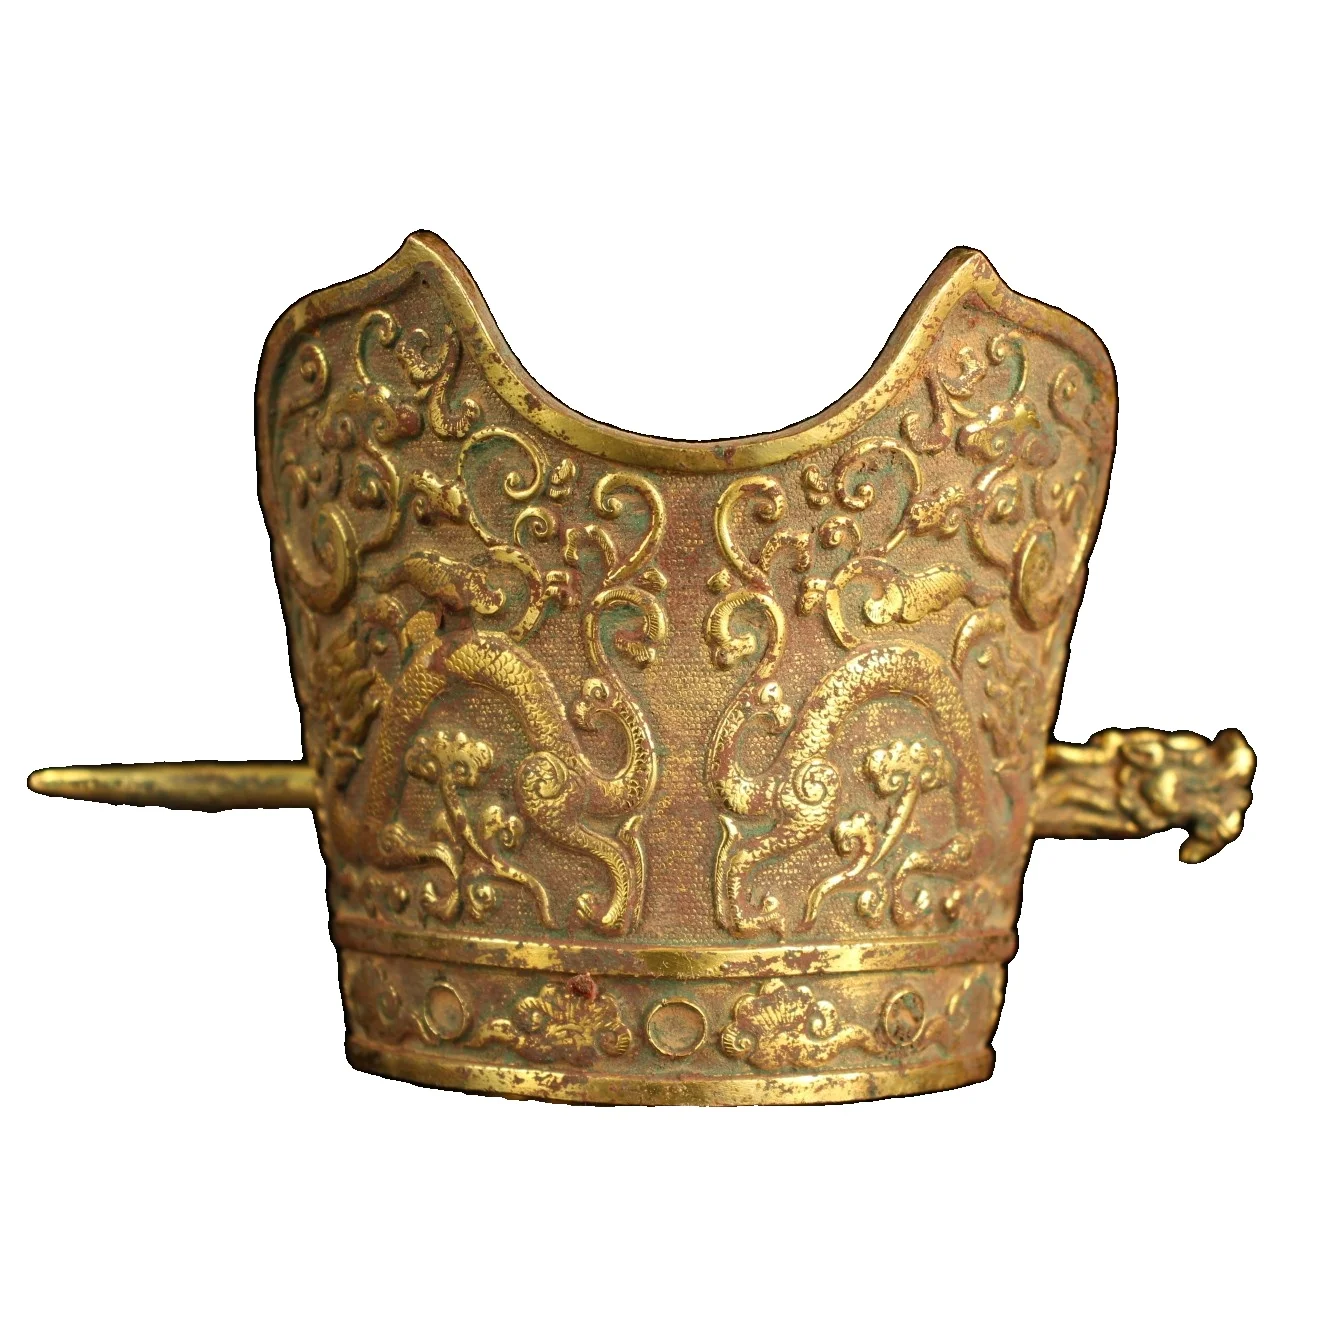 

Laojunlu старая коллекция заколок для волос из позолоченной бронзы и официальных шляп, имитация античной бронзы, коллекция шедевров